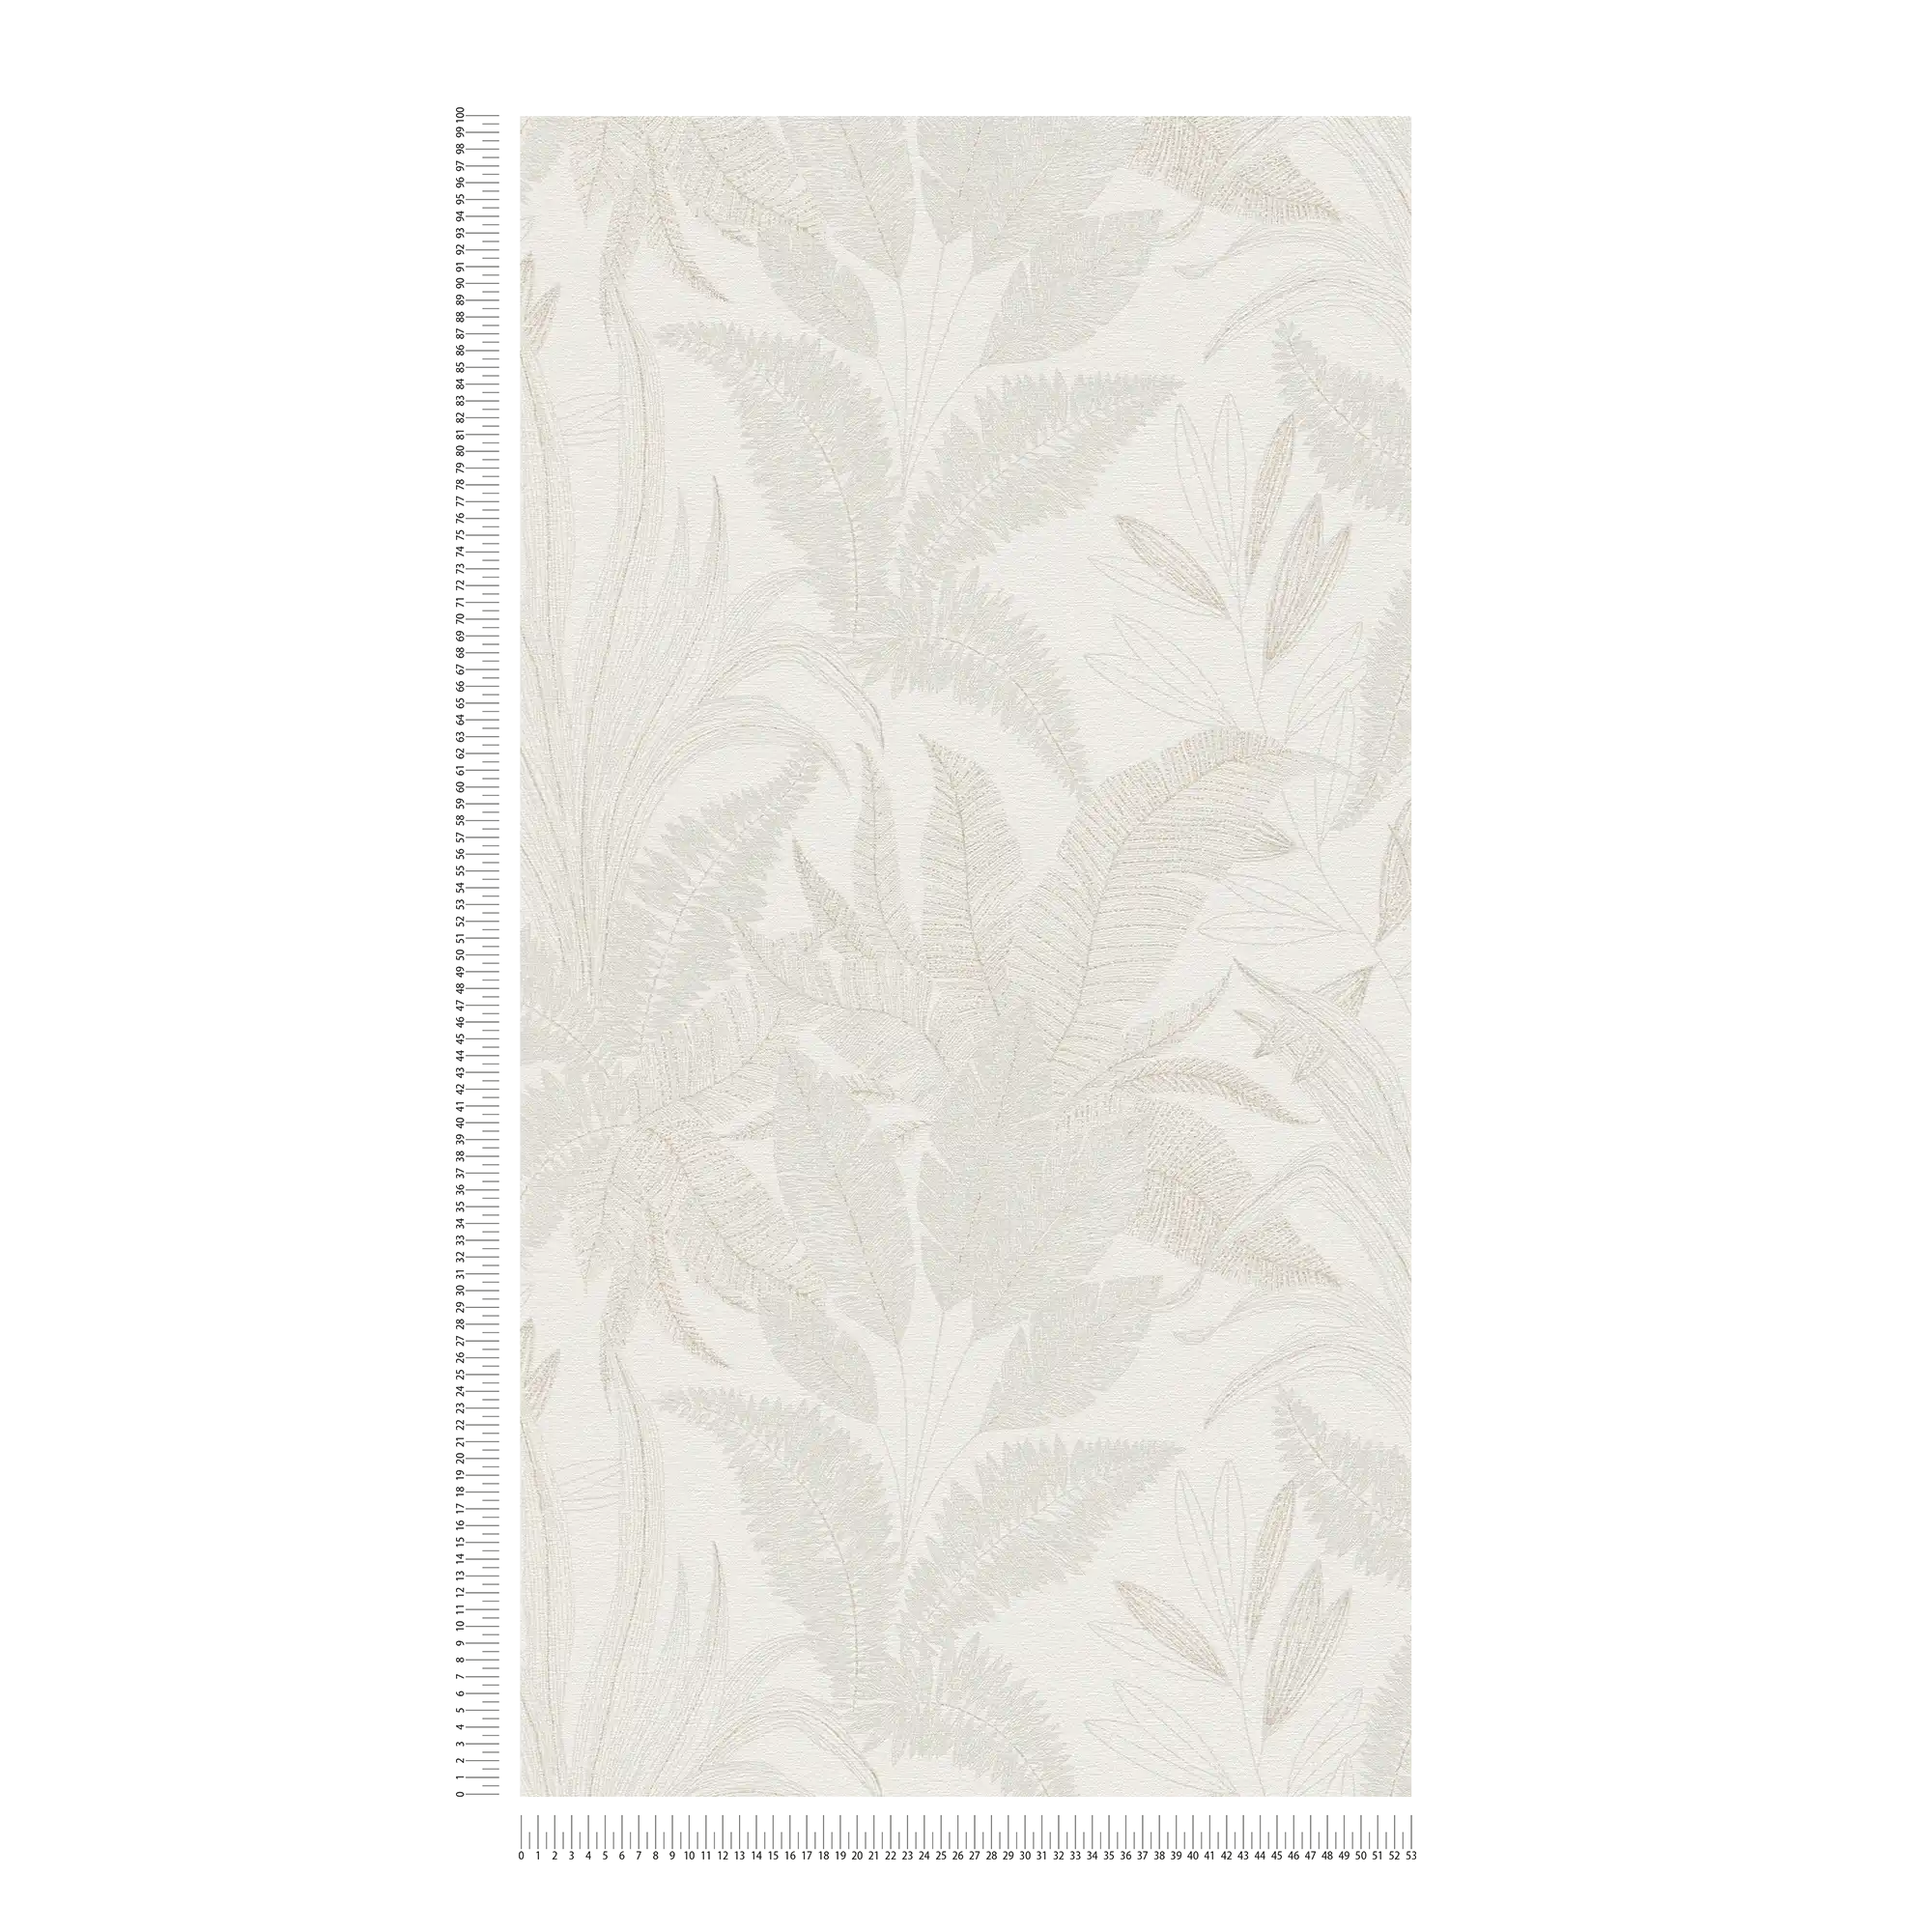             Carta da parati floreale in tessuto non tessuto con motivo a foglie in colori tenui - crema, beige
        